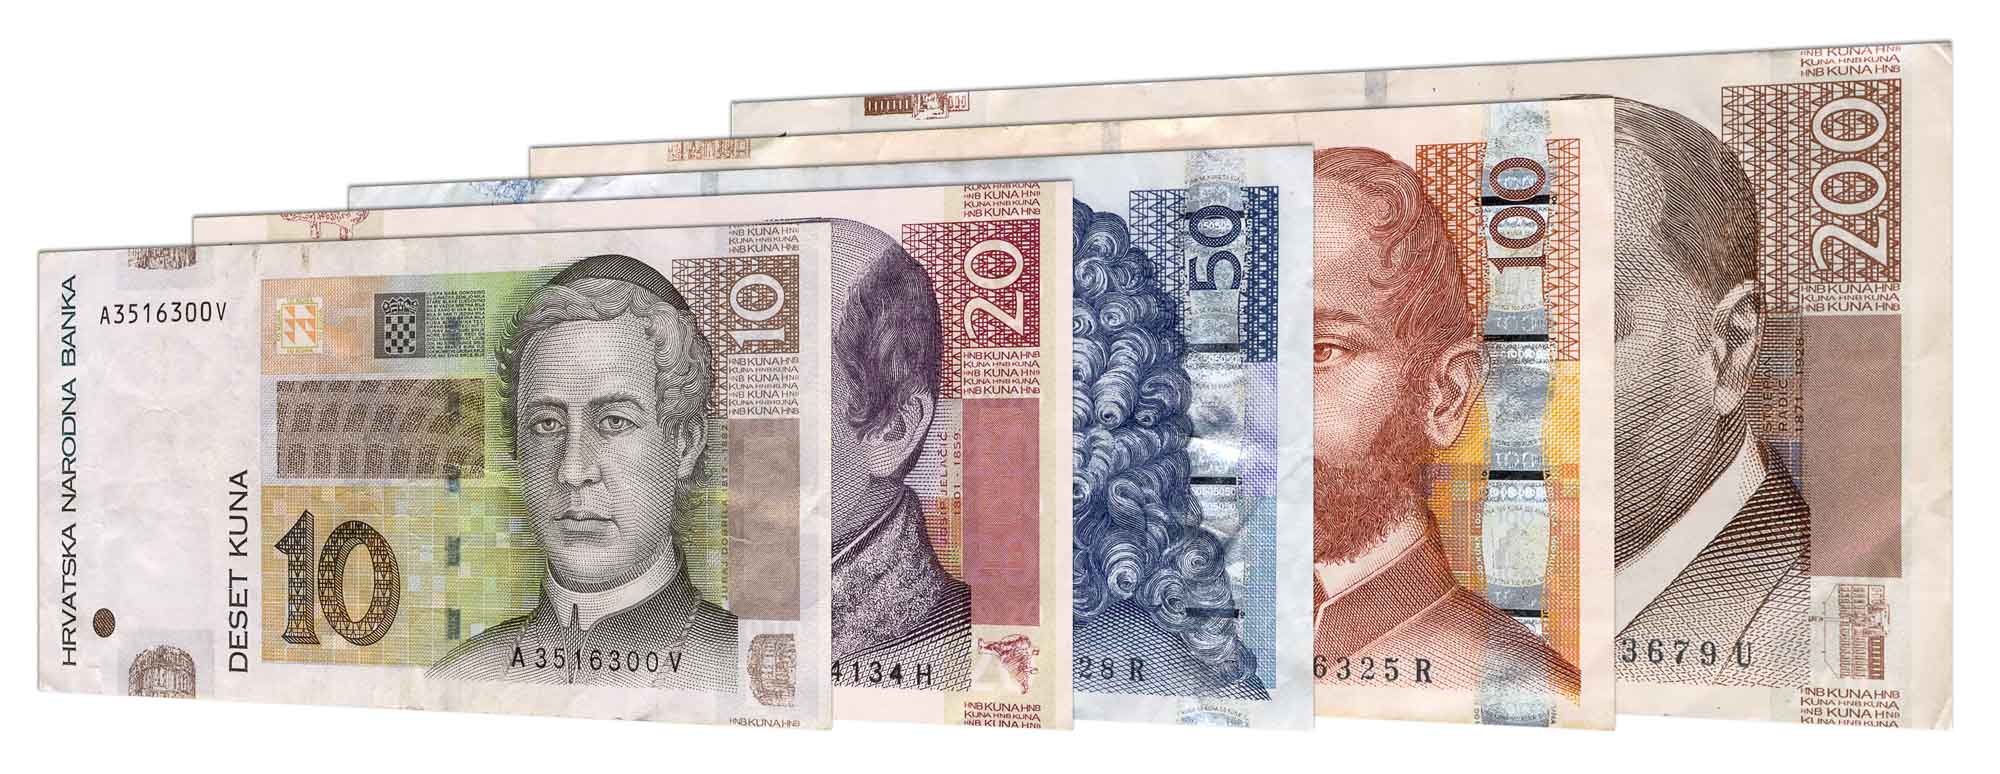 croatian Kuna banknotes